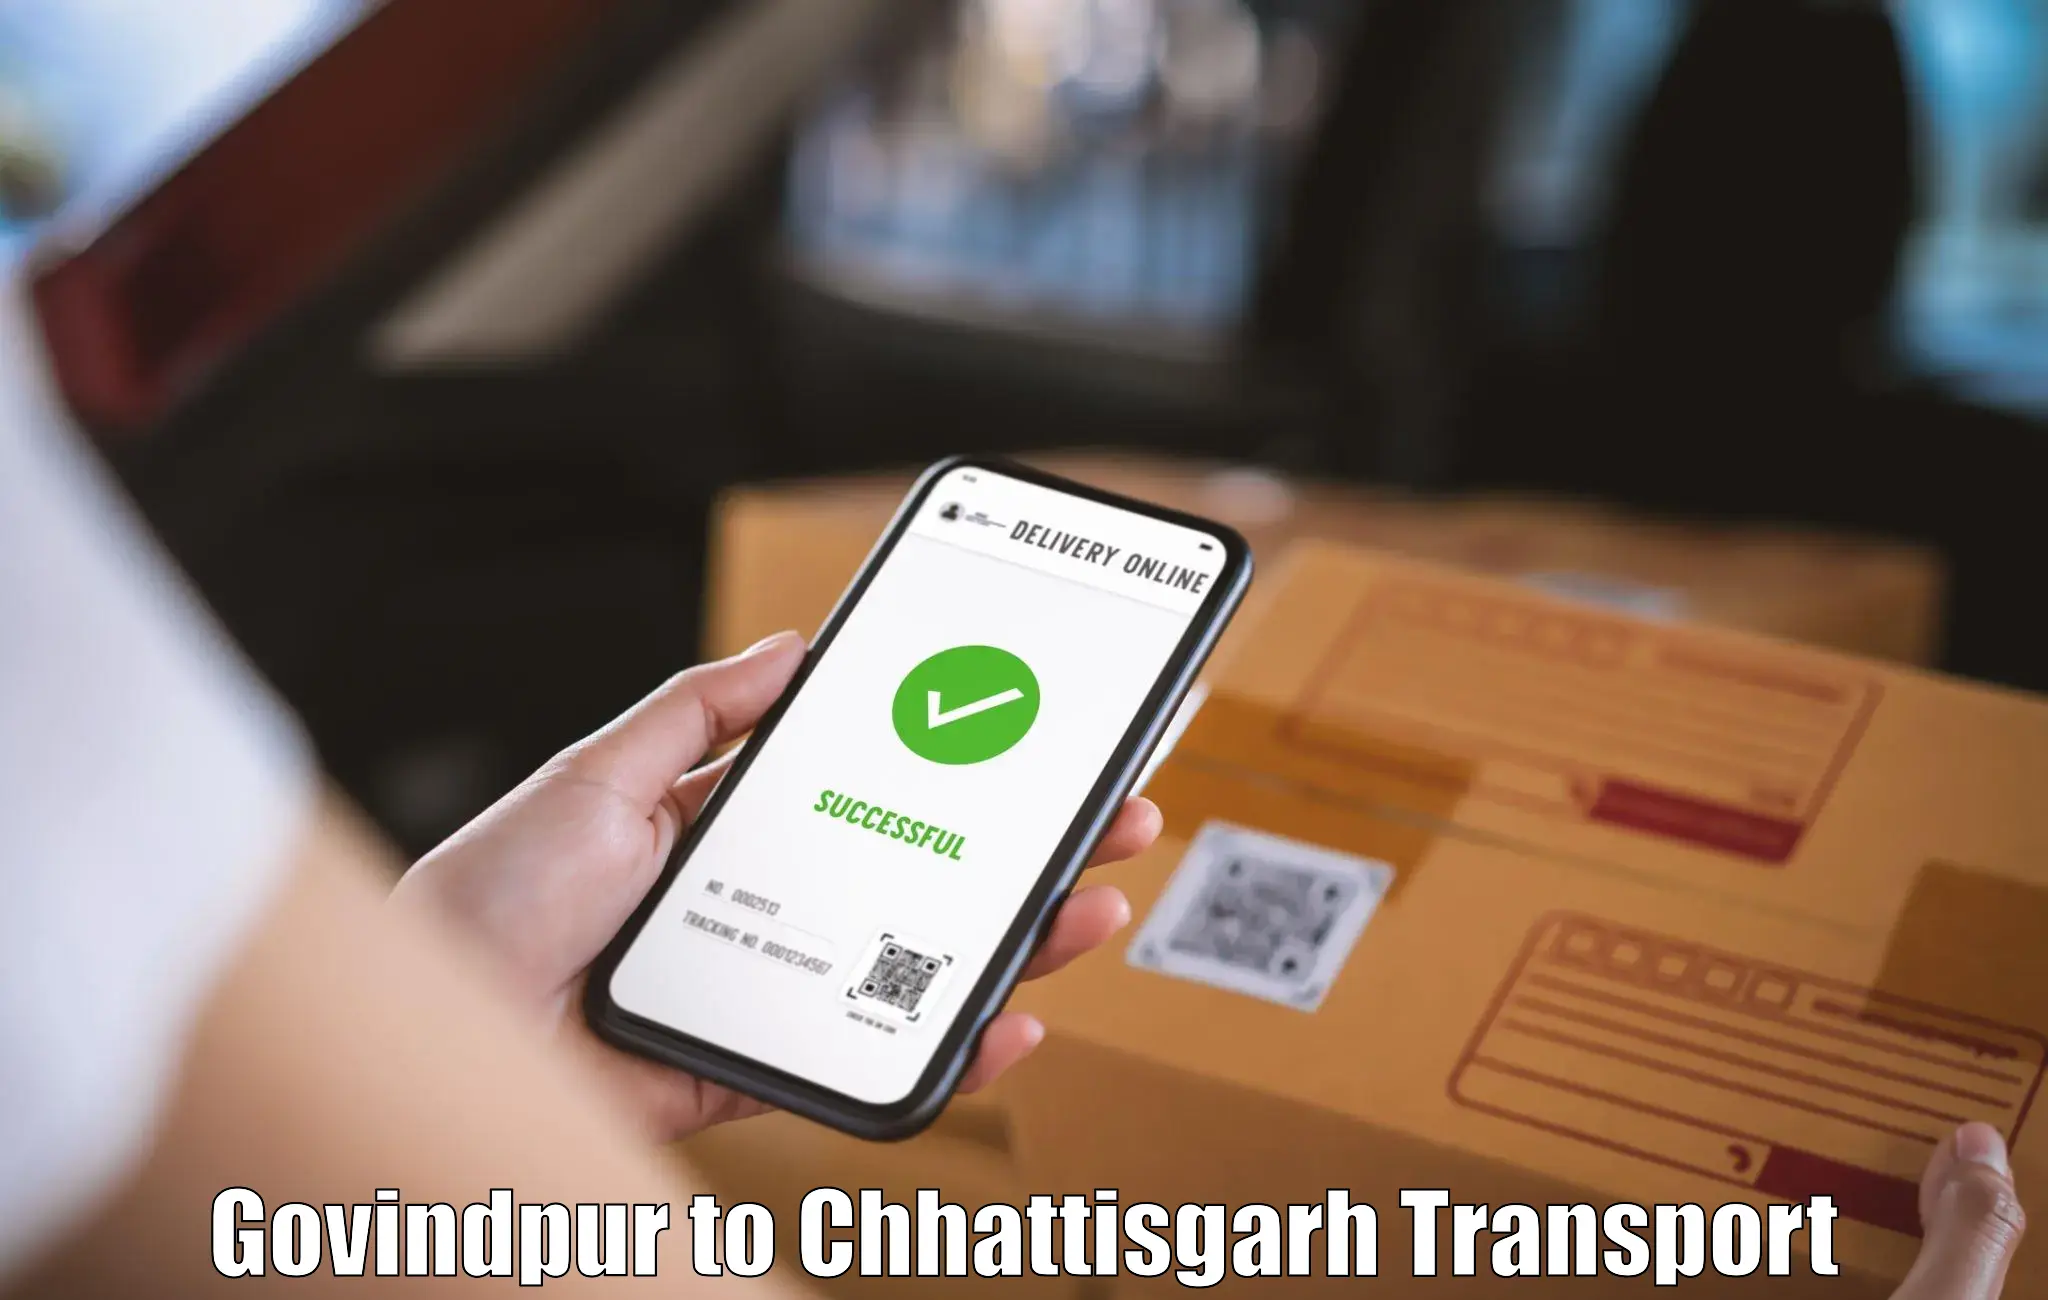 Pick up transport service Govindpur to Raigarh